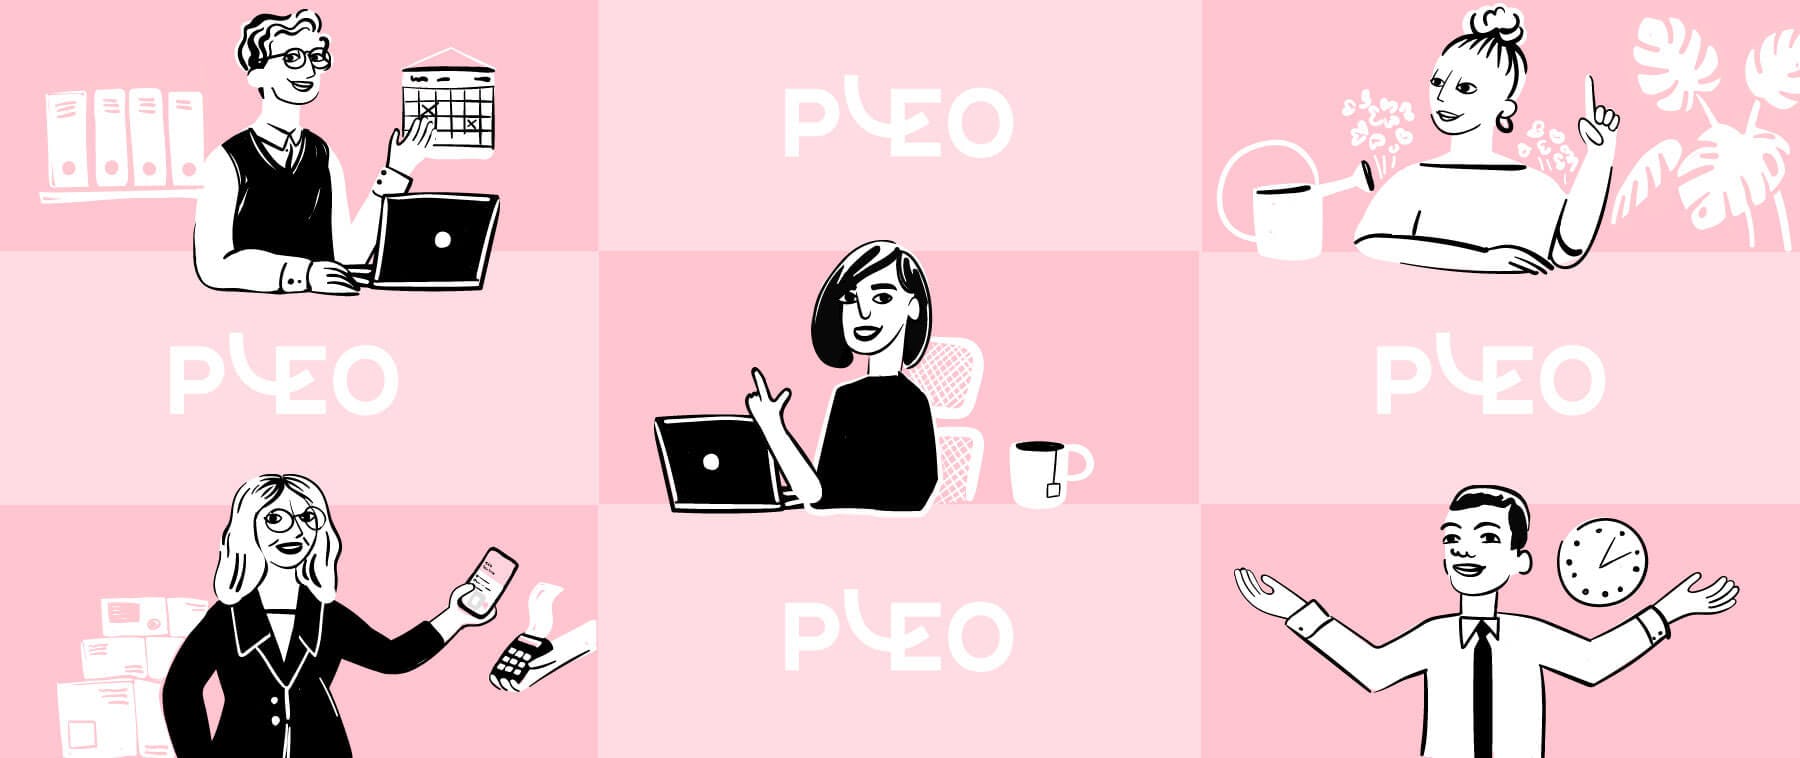 Pleo-kunder fortæller, hvorfor du bør bruge vores kort